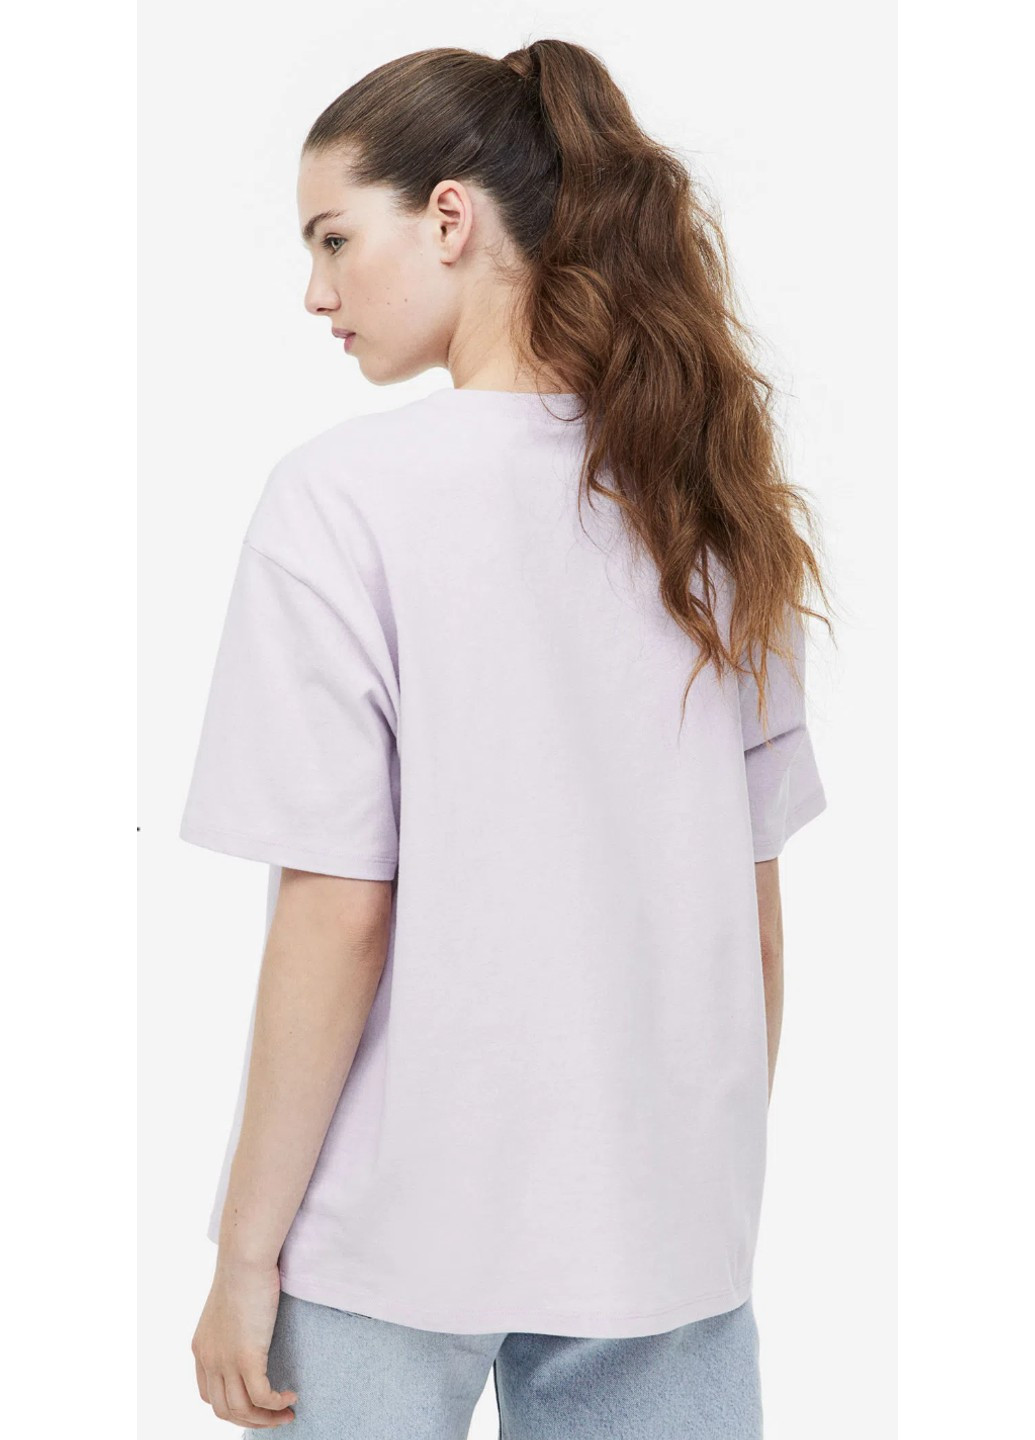 Лавандова літня жіноча футболка н&м (56008) xs лавандова H&M